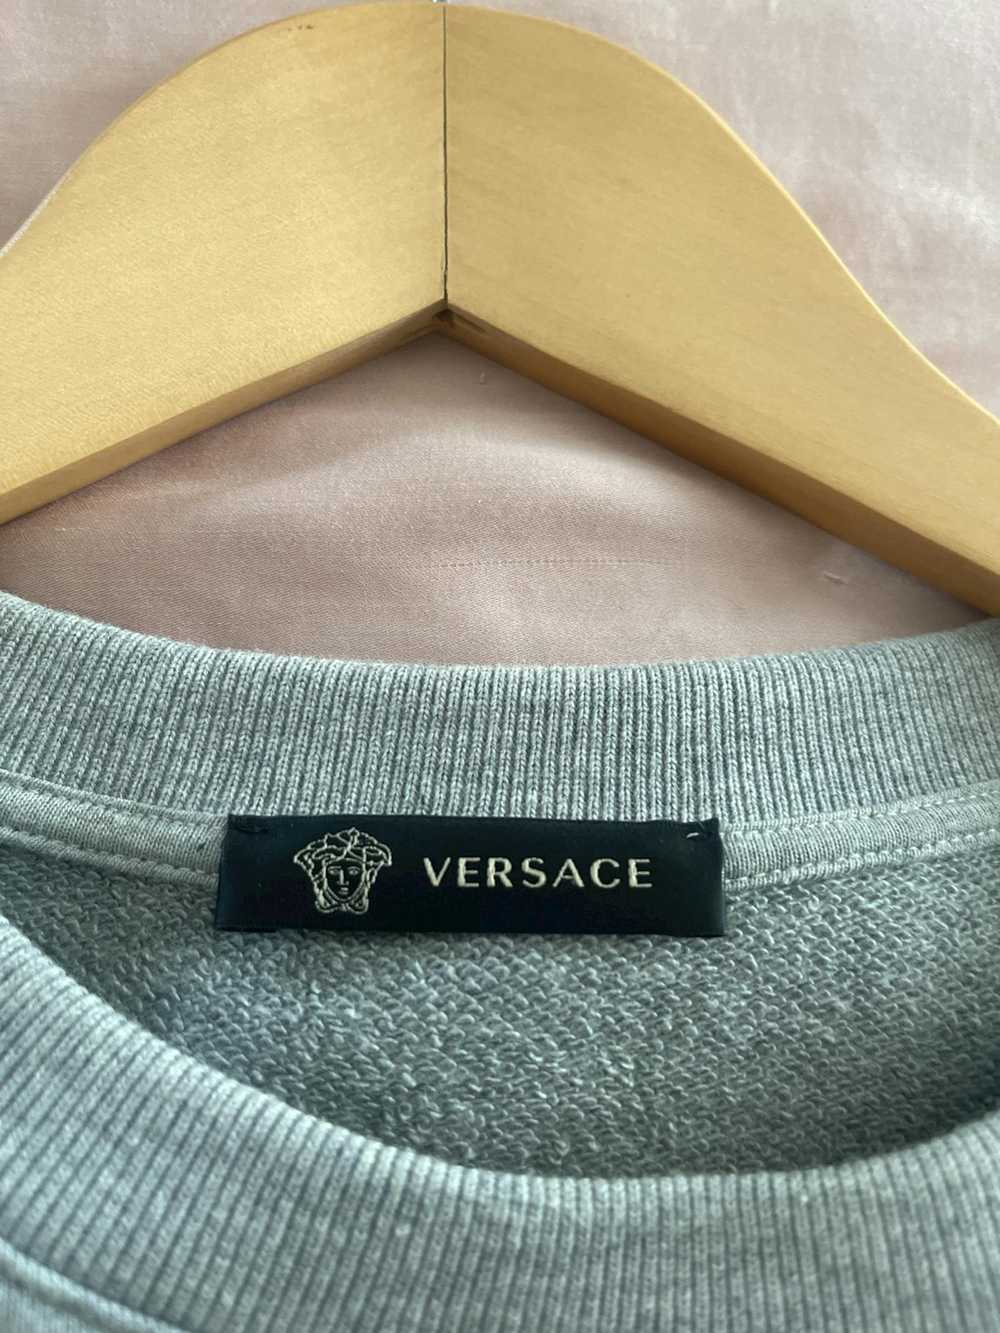 Versace Versace Sweater - image 5